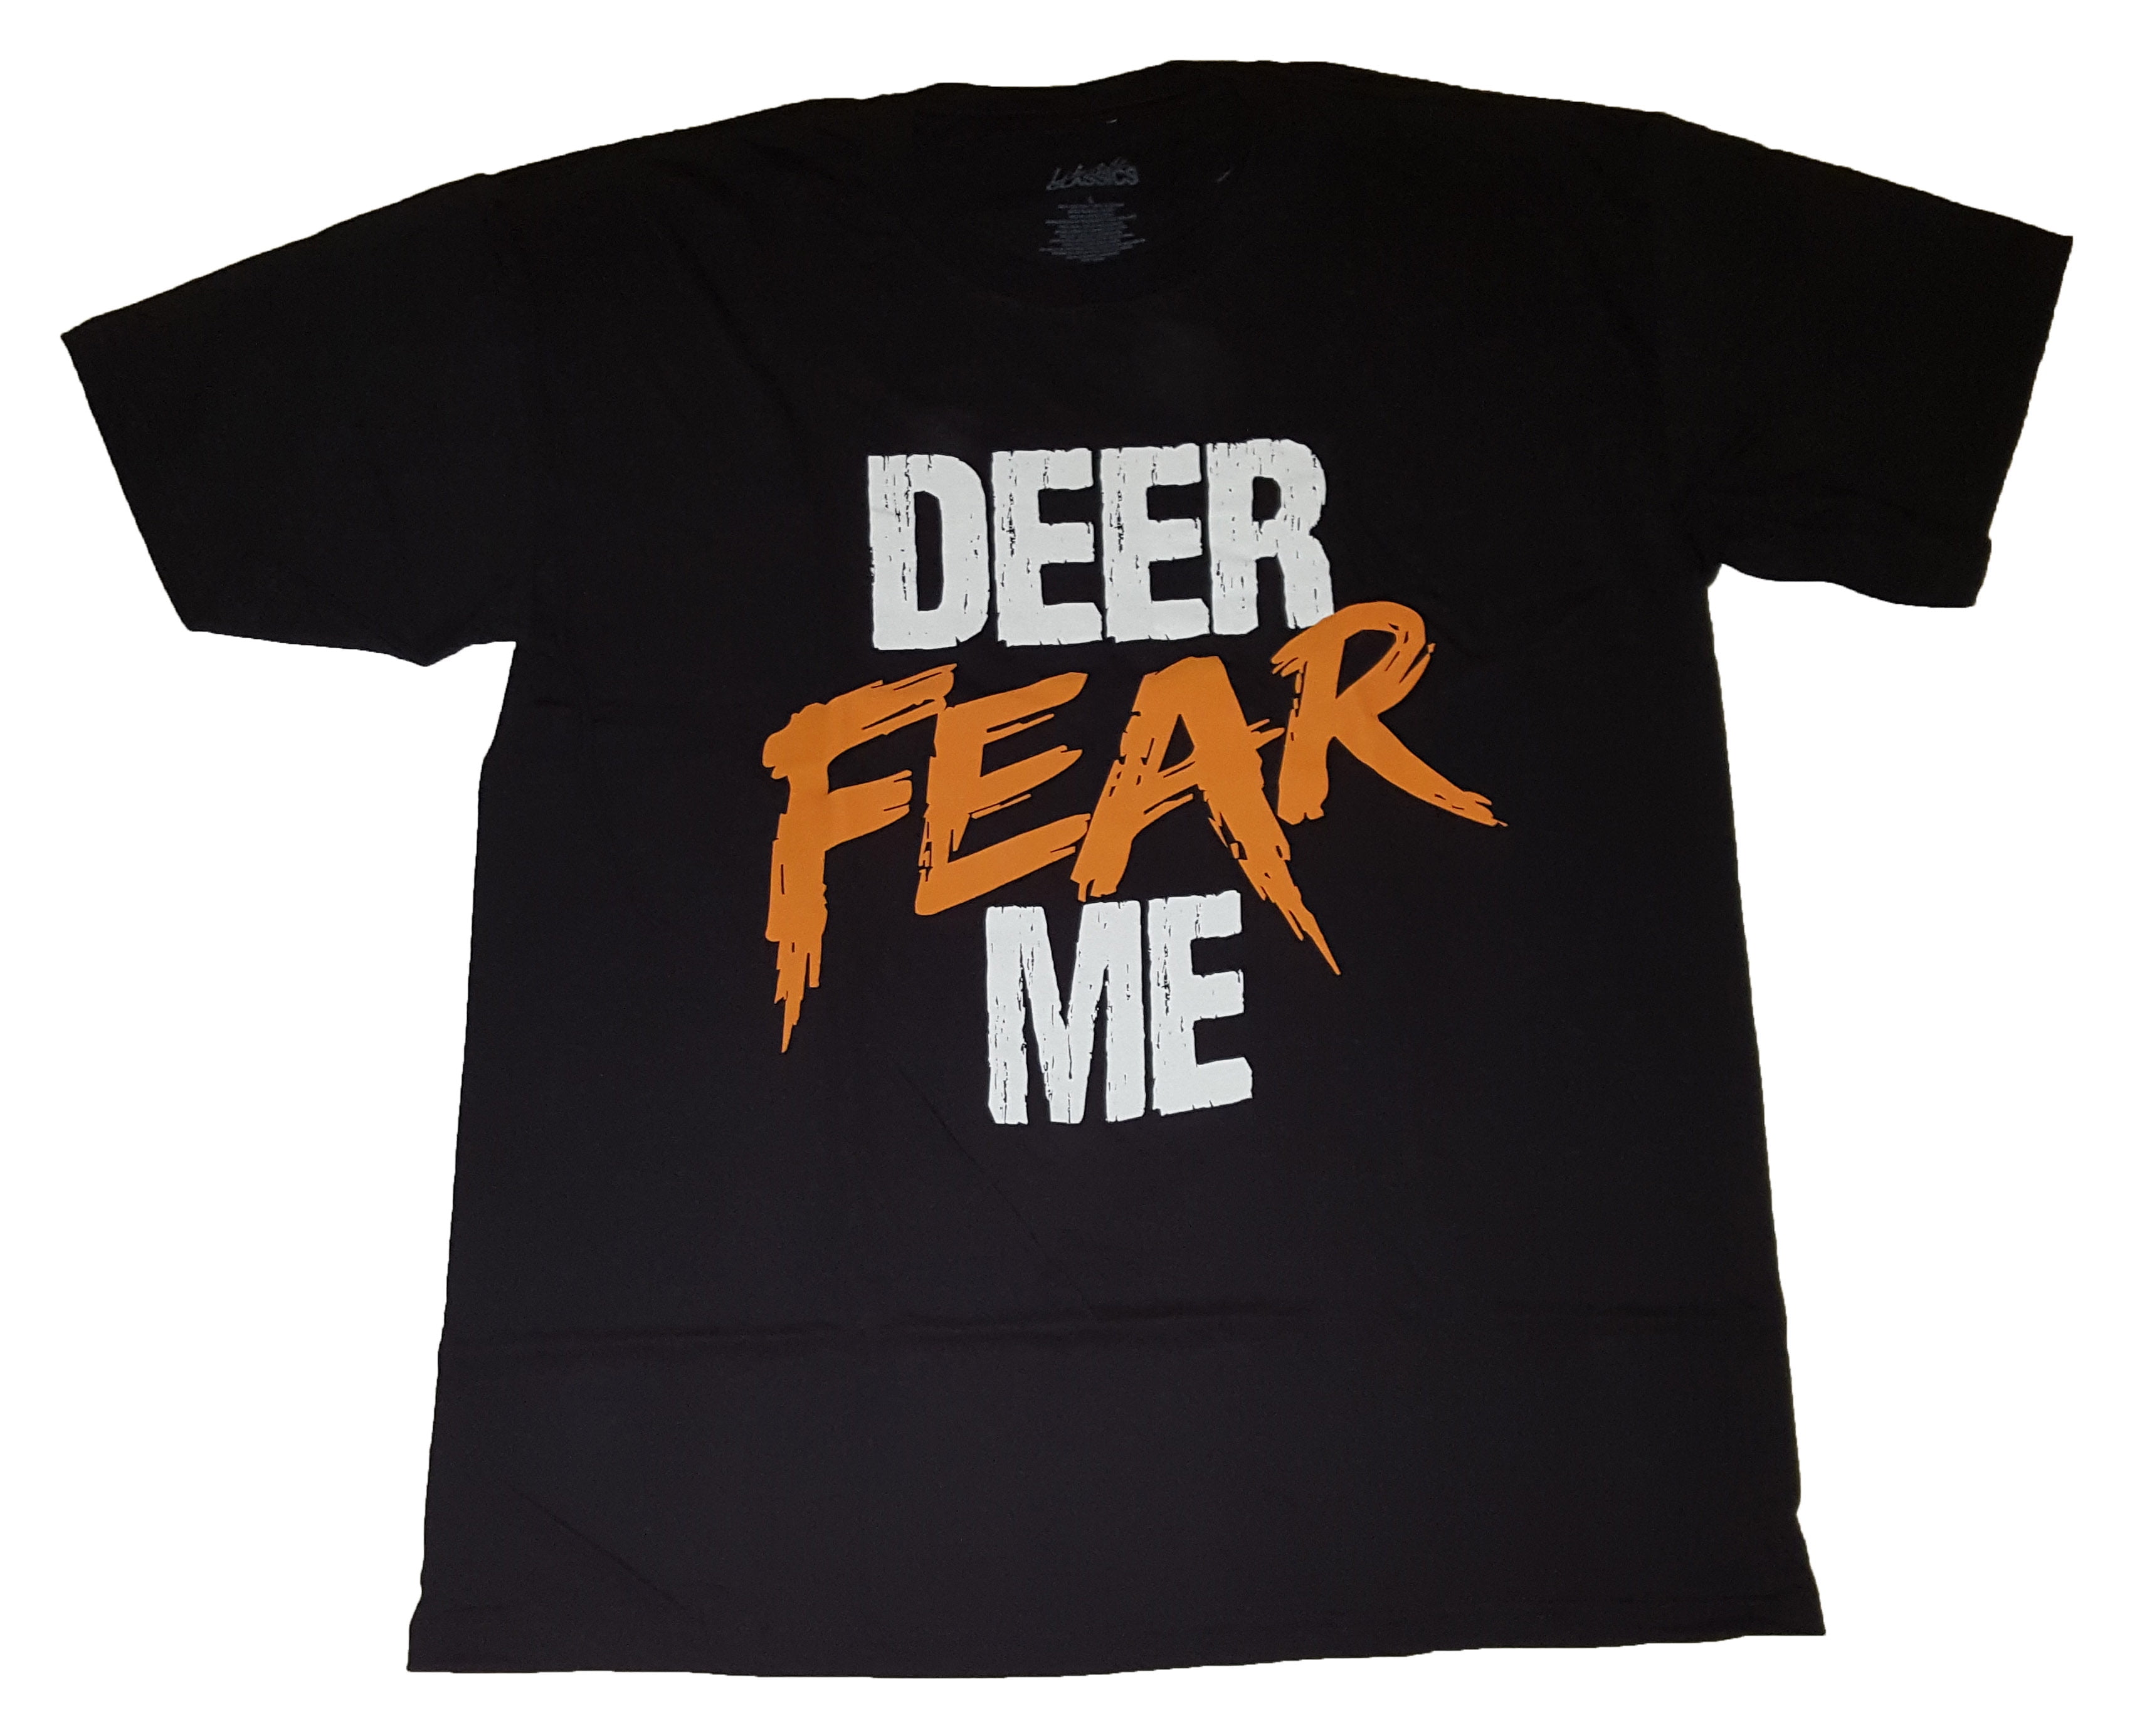 fear the deer T-Shirt